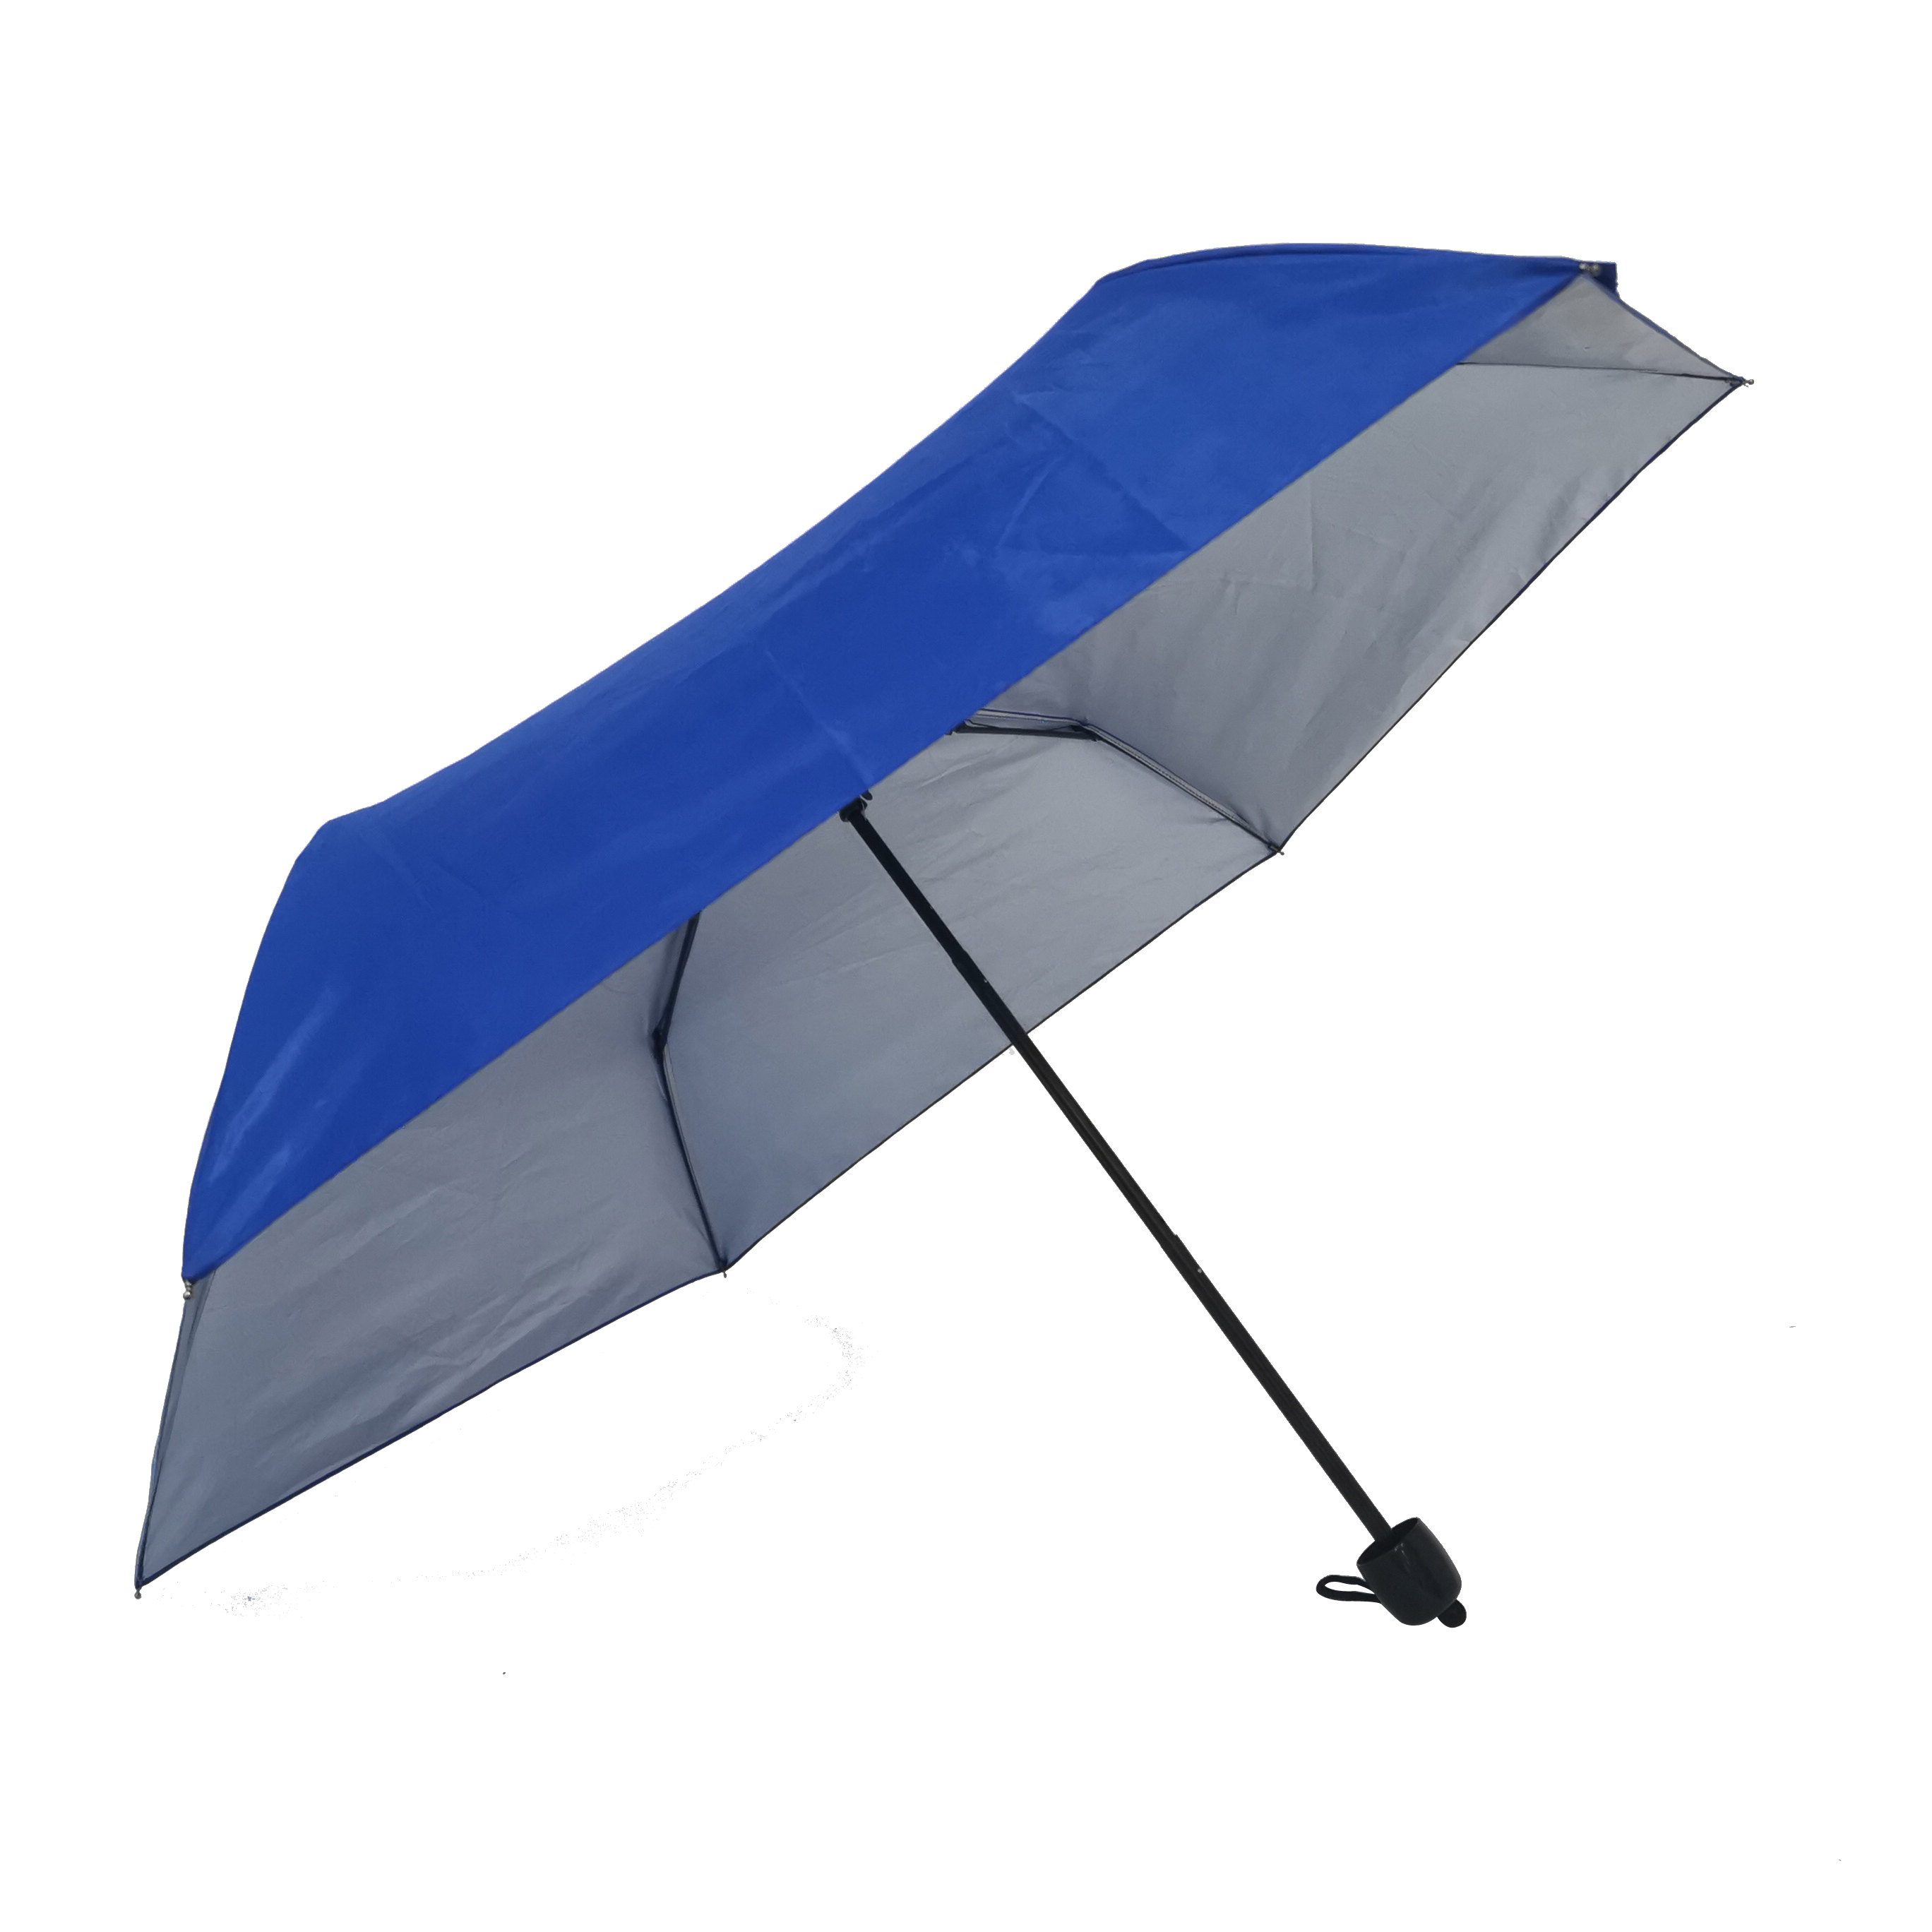 https://www.hodaumbrella.com/automatic-open-manual-إغلاق-3-fold-umbrella-product/